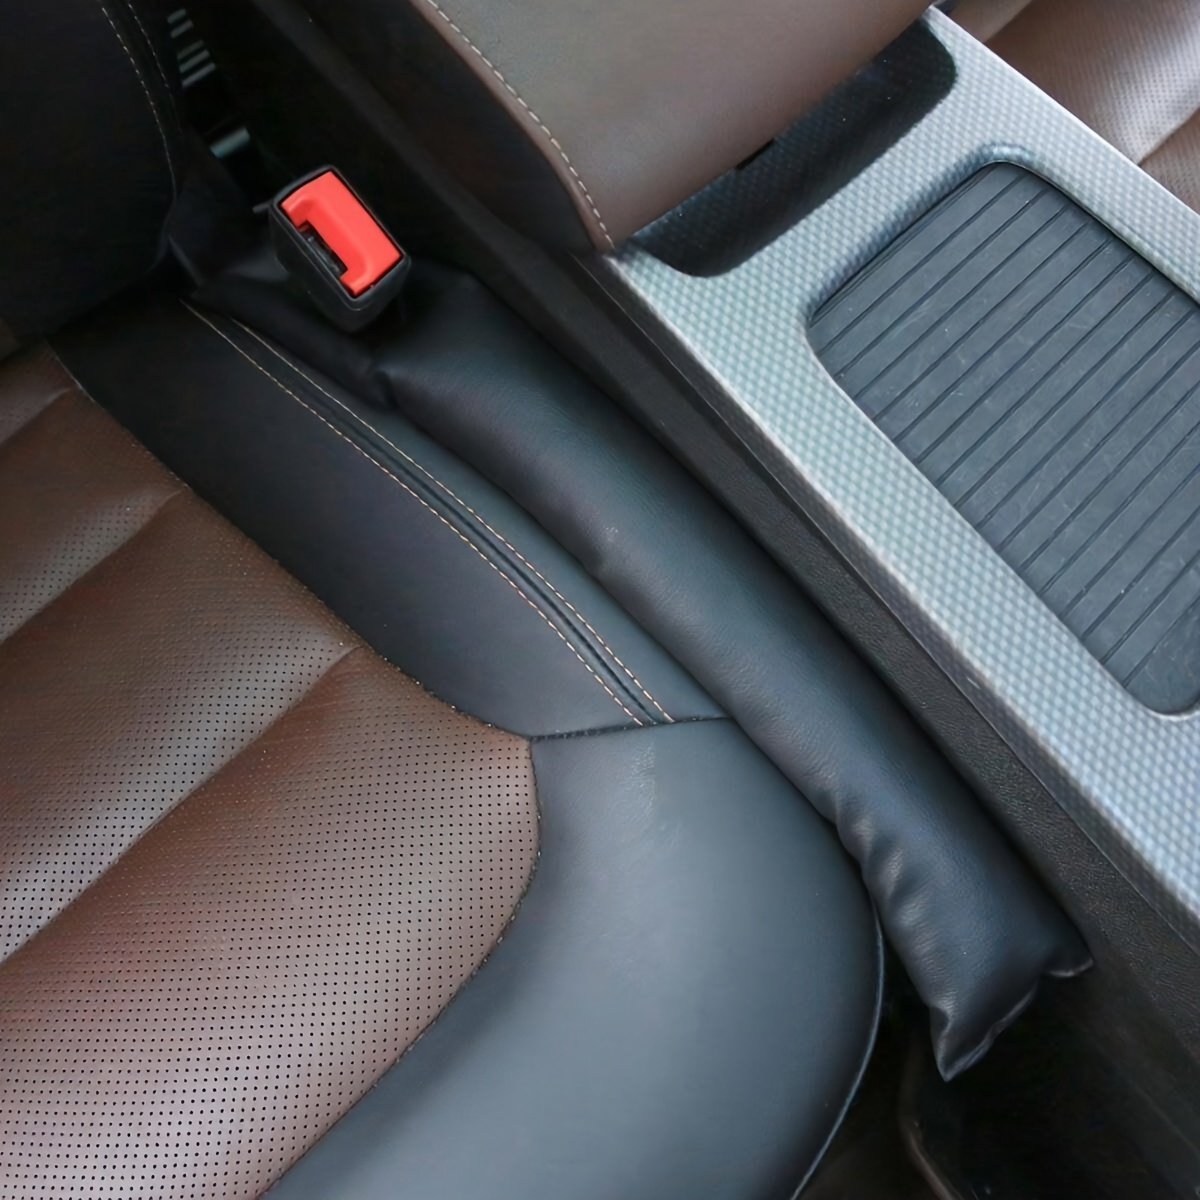 1 Paar Autositz-lückenfüller Mit Autositzgurtloch, Auto